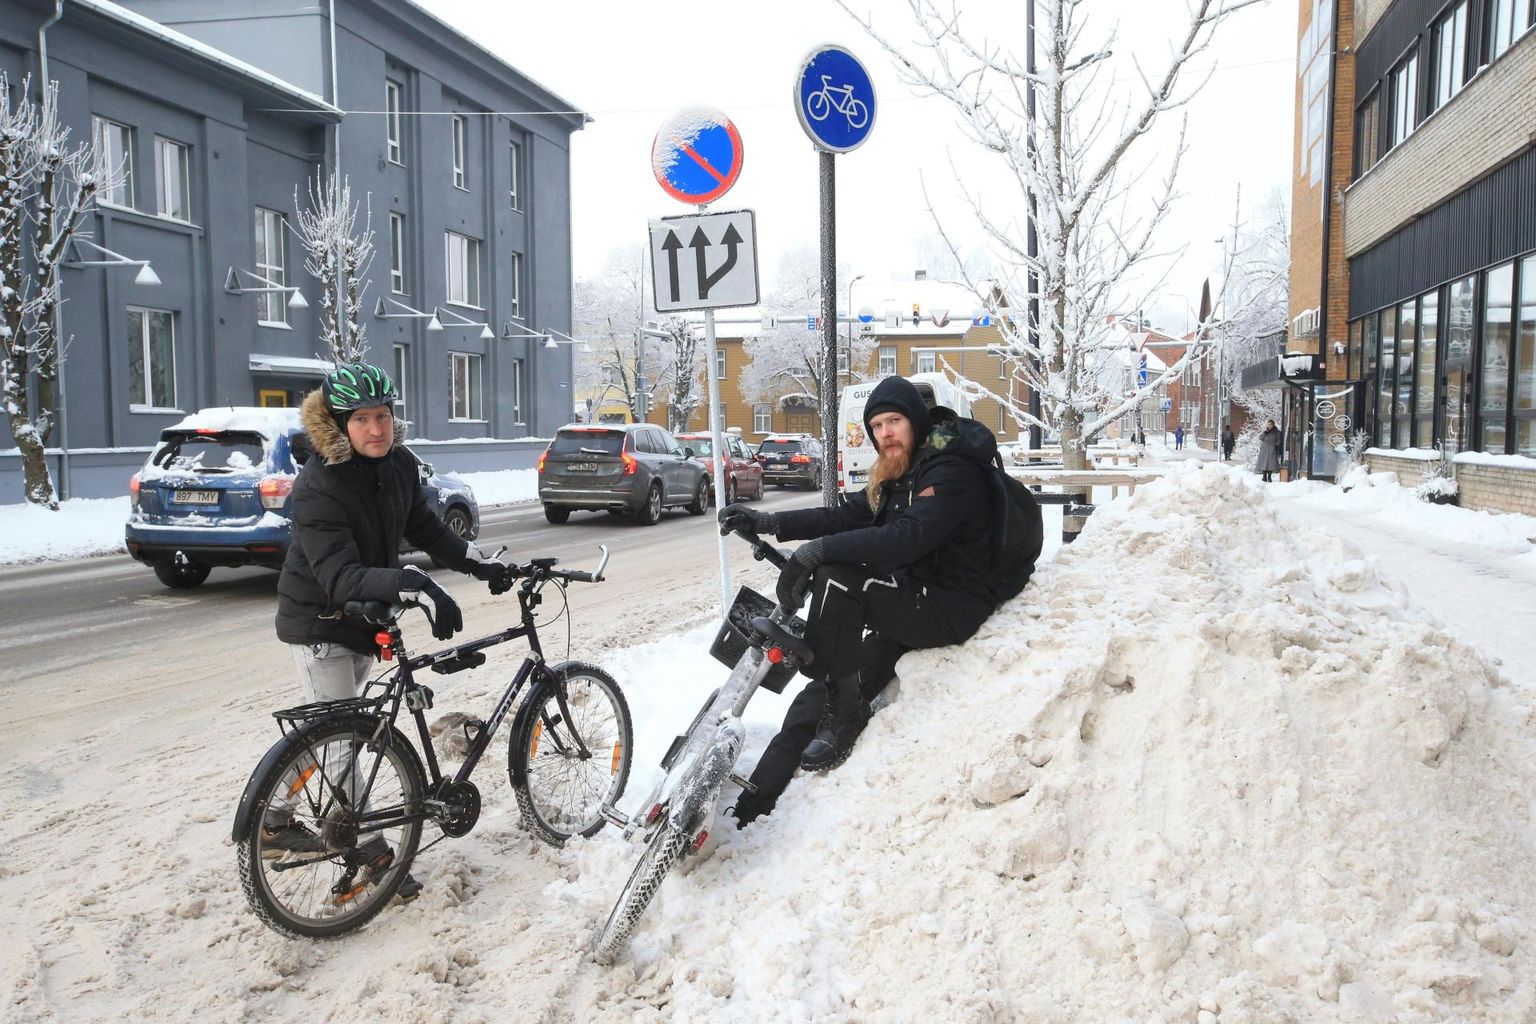 Kastani tänaval jäid rattaentusiast Even Heinväli (vasakul) ja Tartu Postimehe ajakirjanik Jens Raavik jalgratastega sõites hätta, sest rattatee on paksu lume all ja sellel peatuvad hoopis kaubaautod.